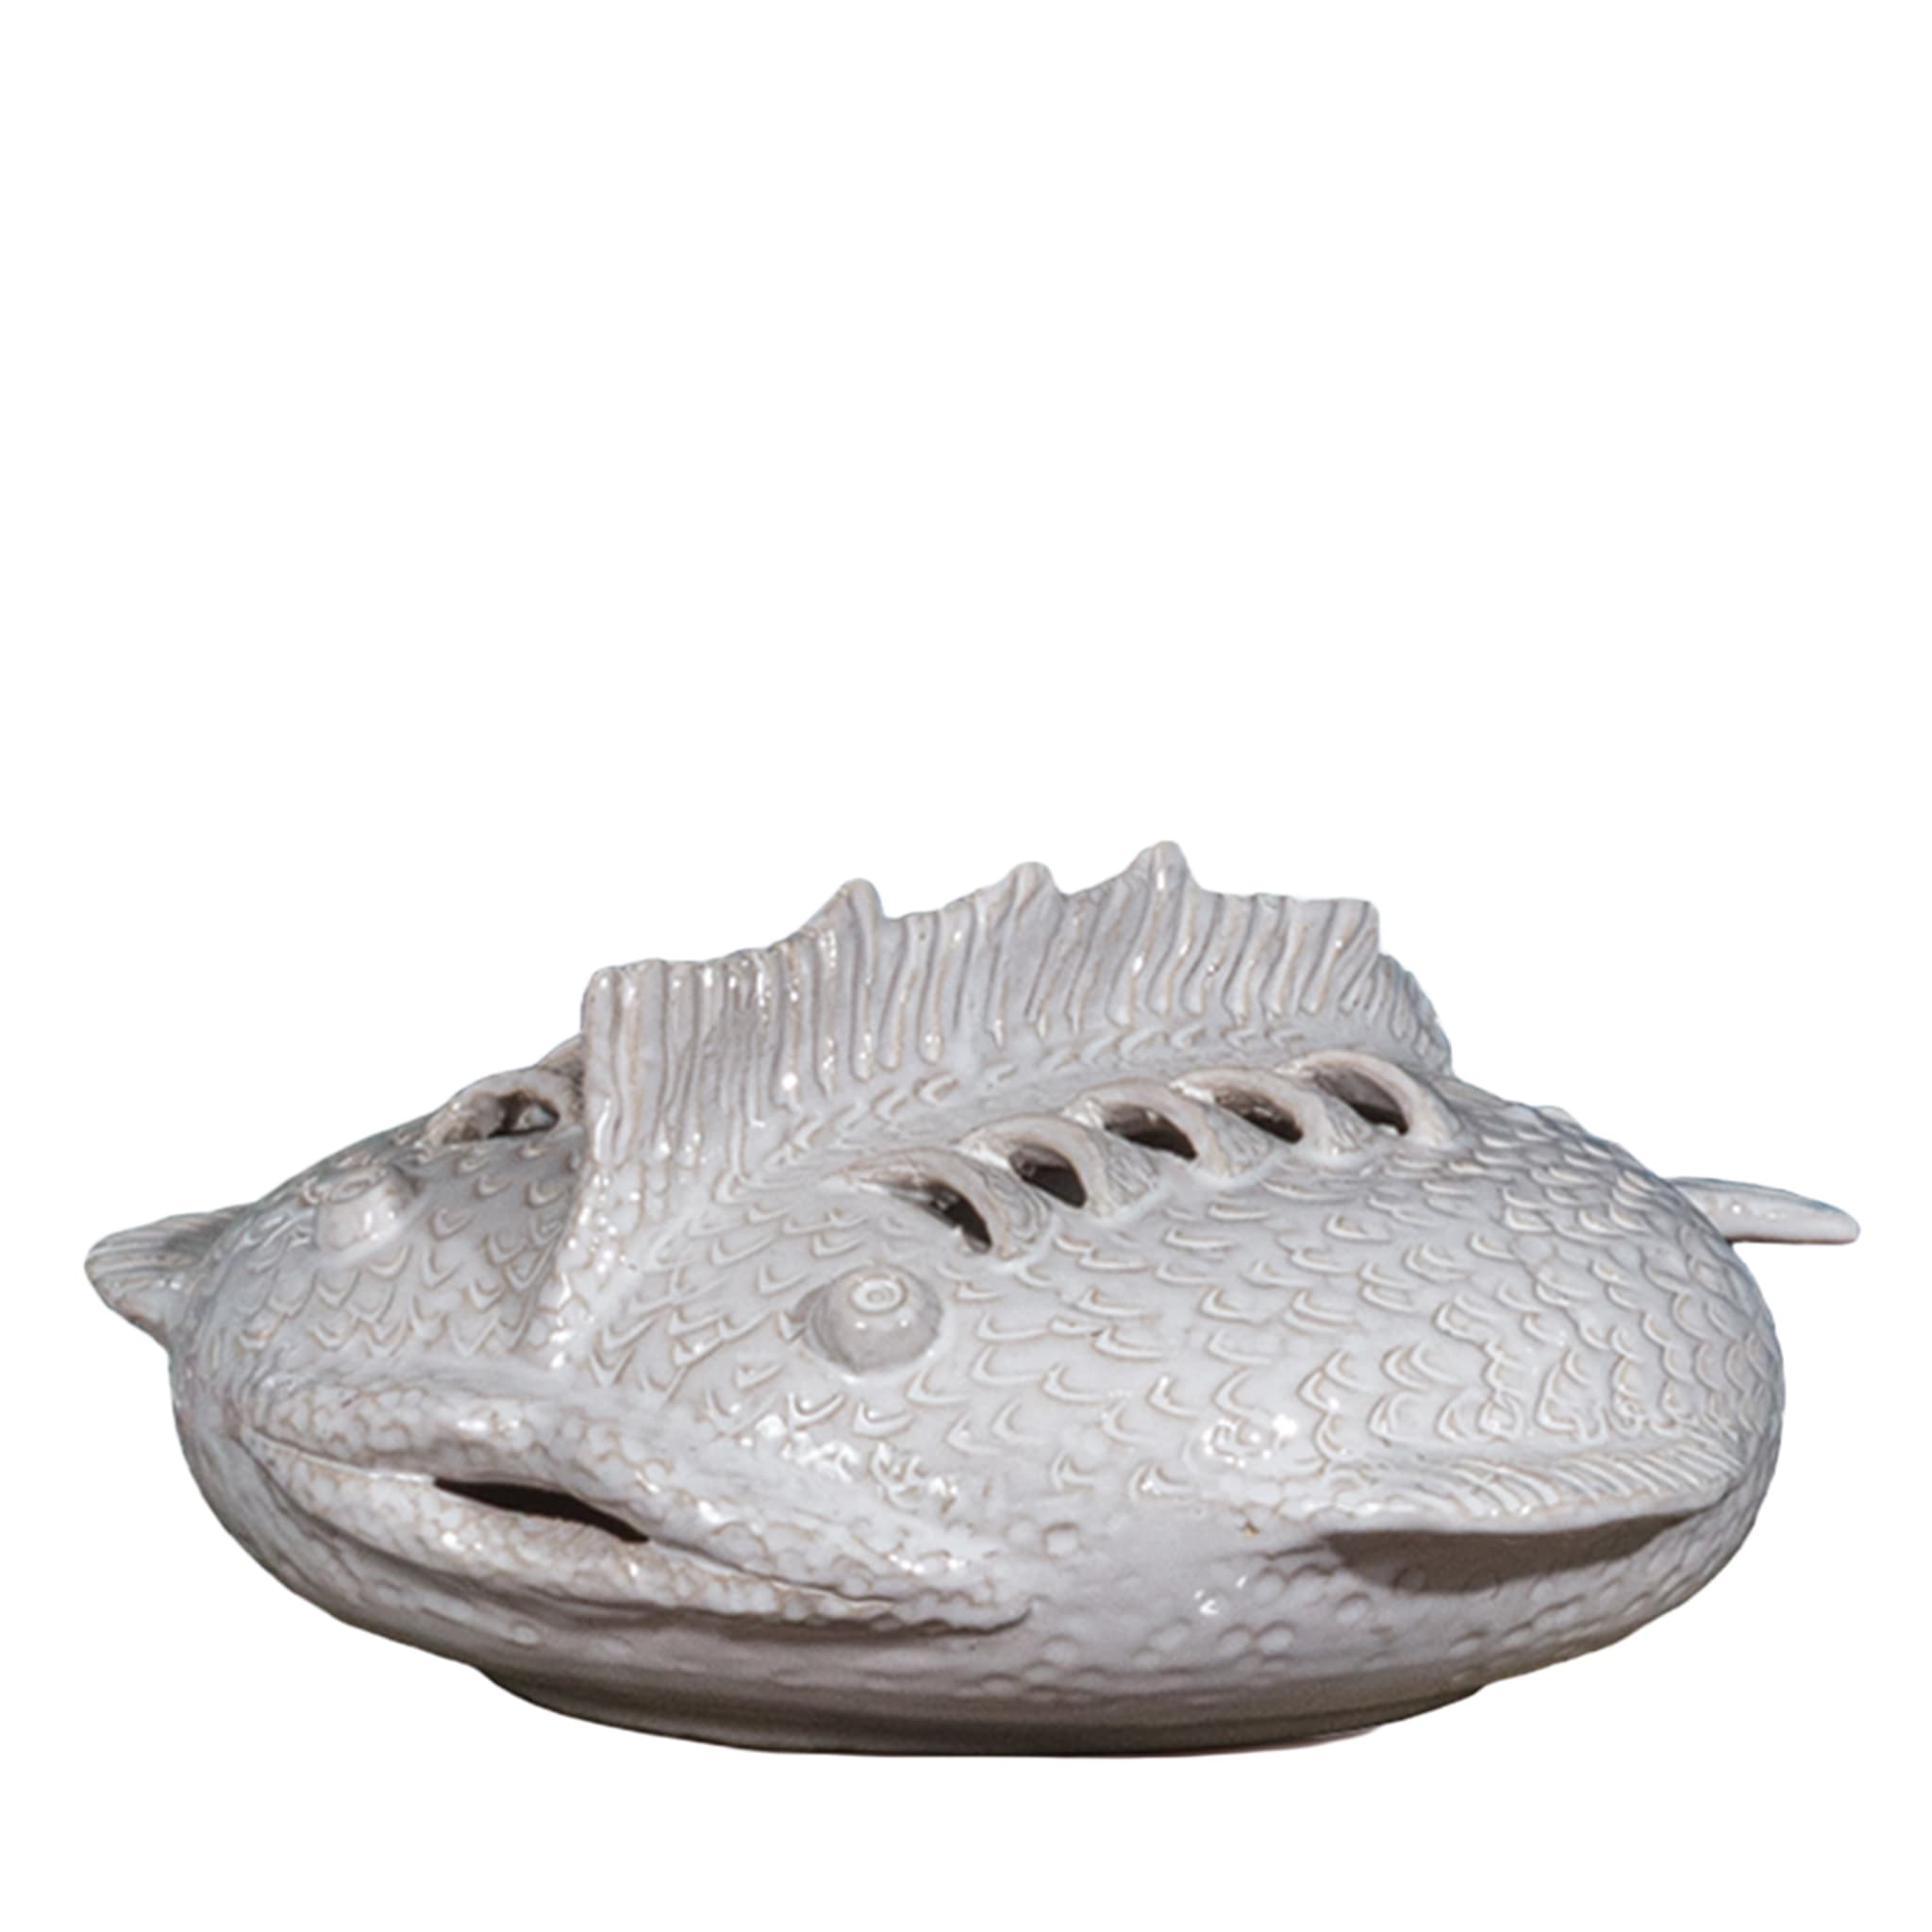 Perle Marine Pesce Razza Escultura Blanca #3 - Vista principal